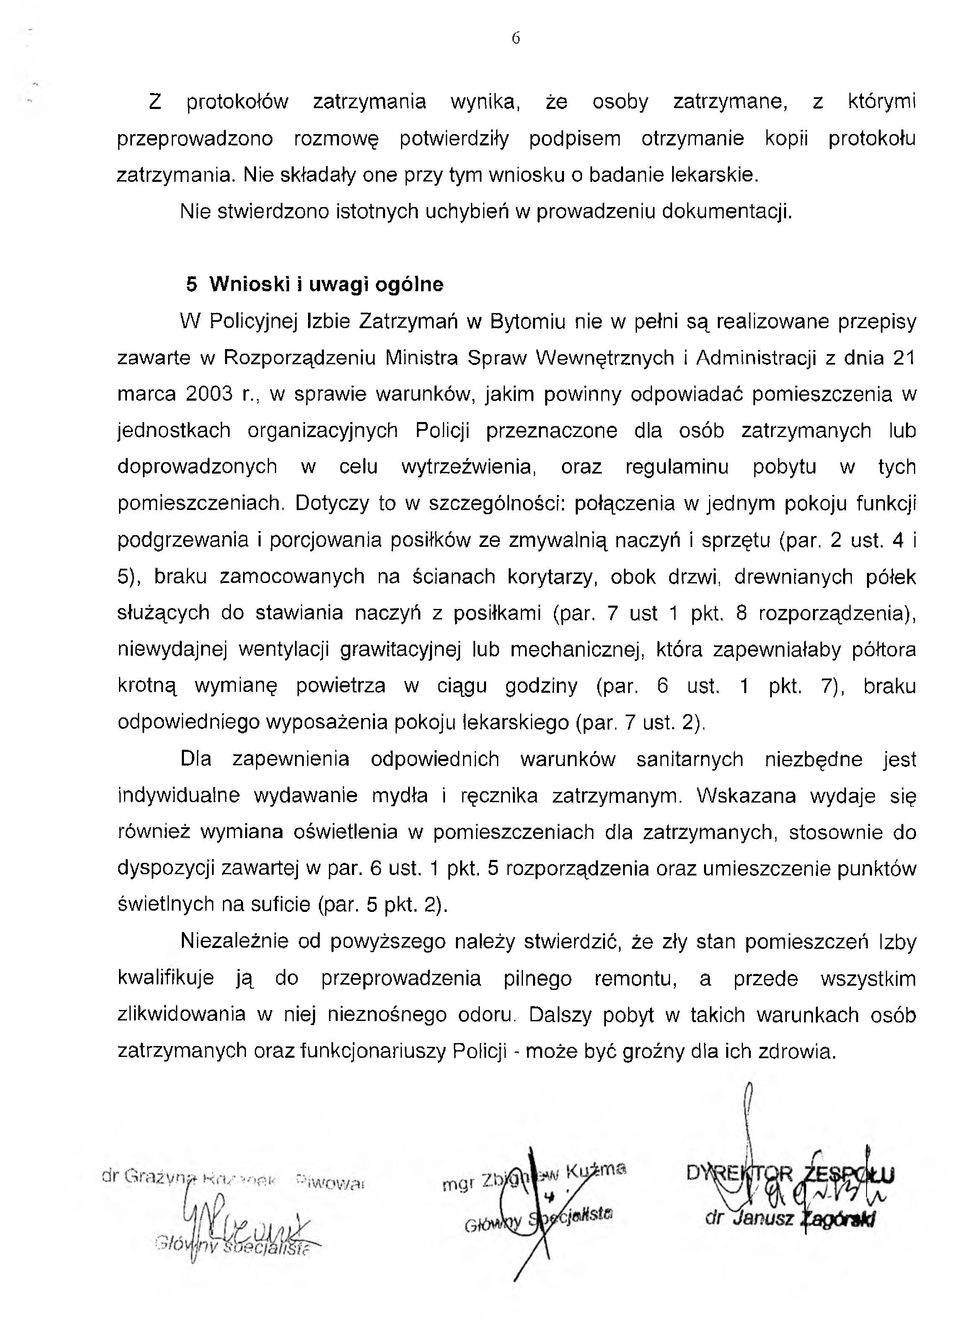 5 Wnioski i uwagi ogólne W Policyjnej Izbie Zatrzymań w Bytomiu nie w pełni są realizowane przepisy zawarte w Rozporządzeniu Ministra Spraw Wewnętrznych i Administracji z dnia 21 marca 2003 r.